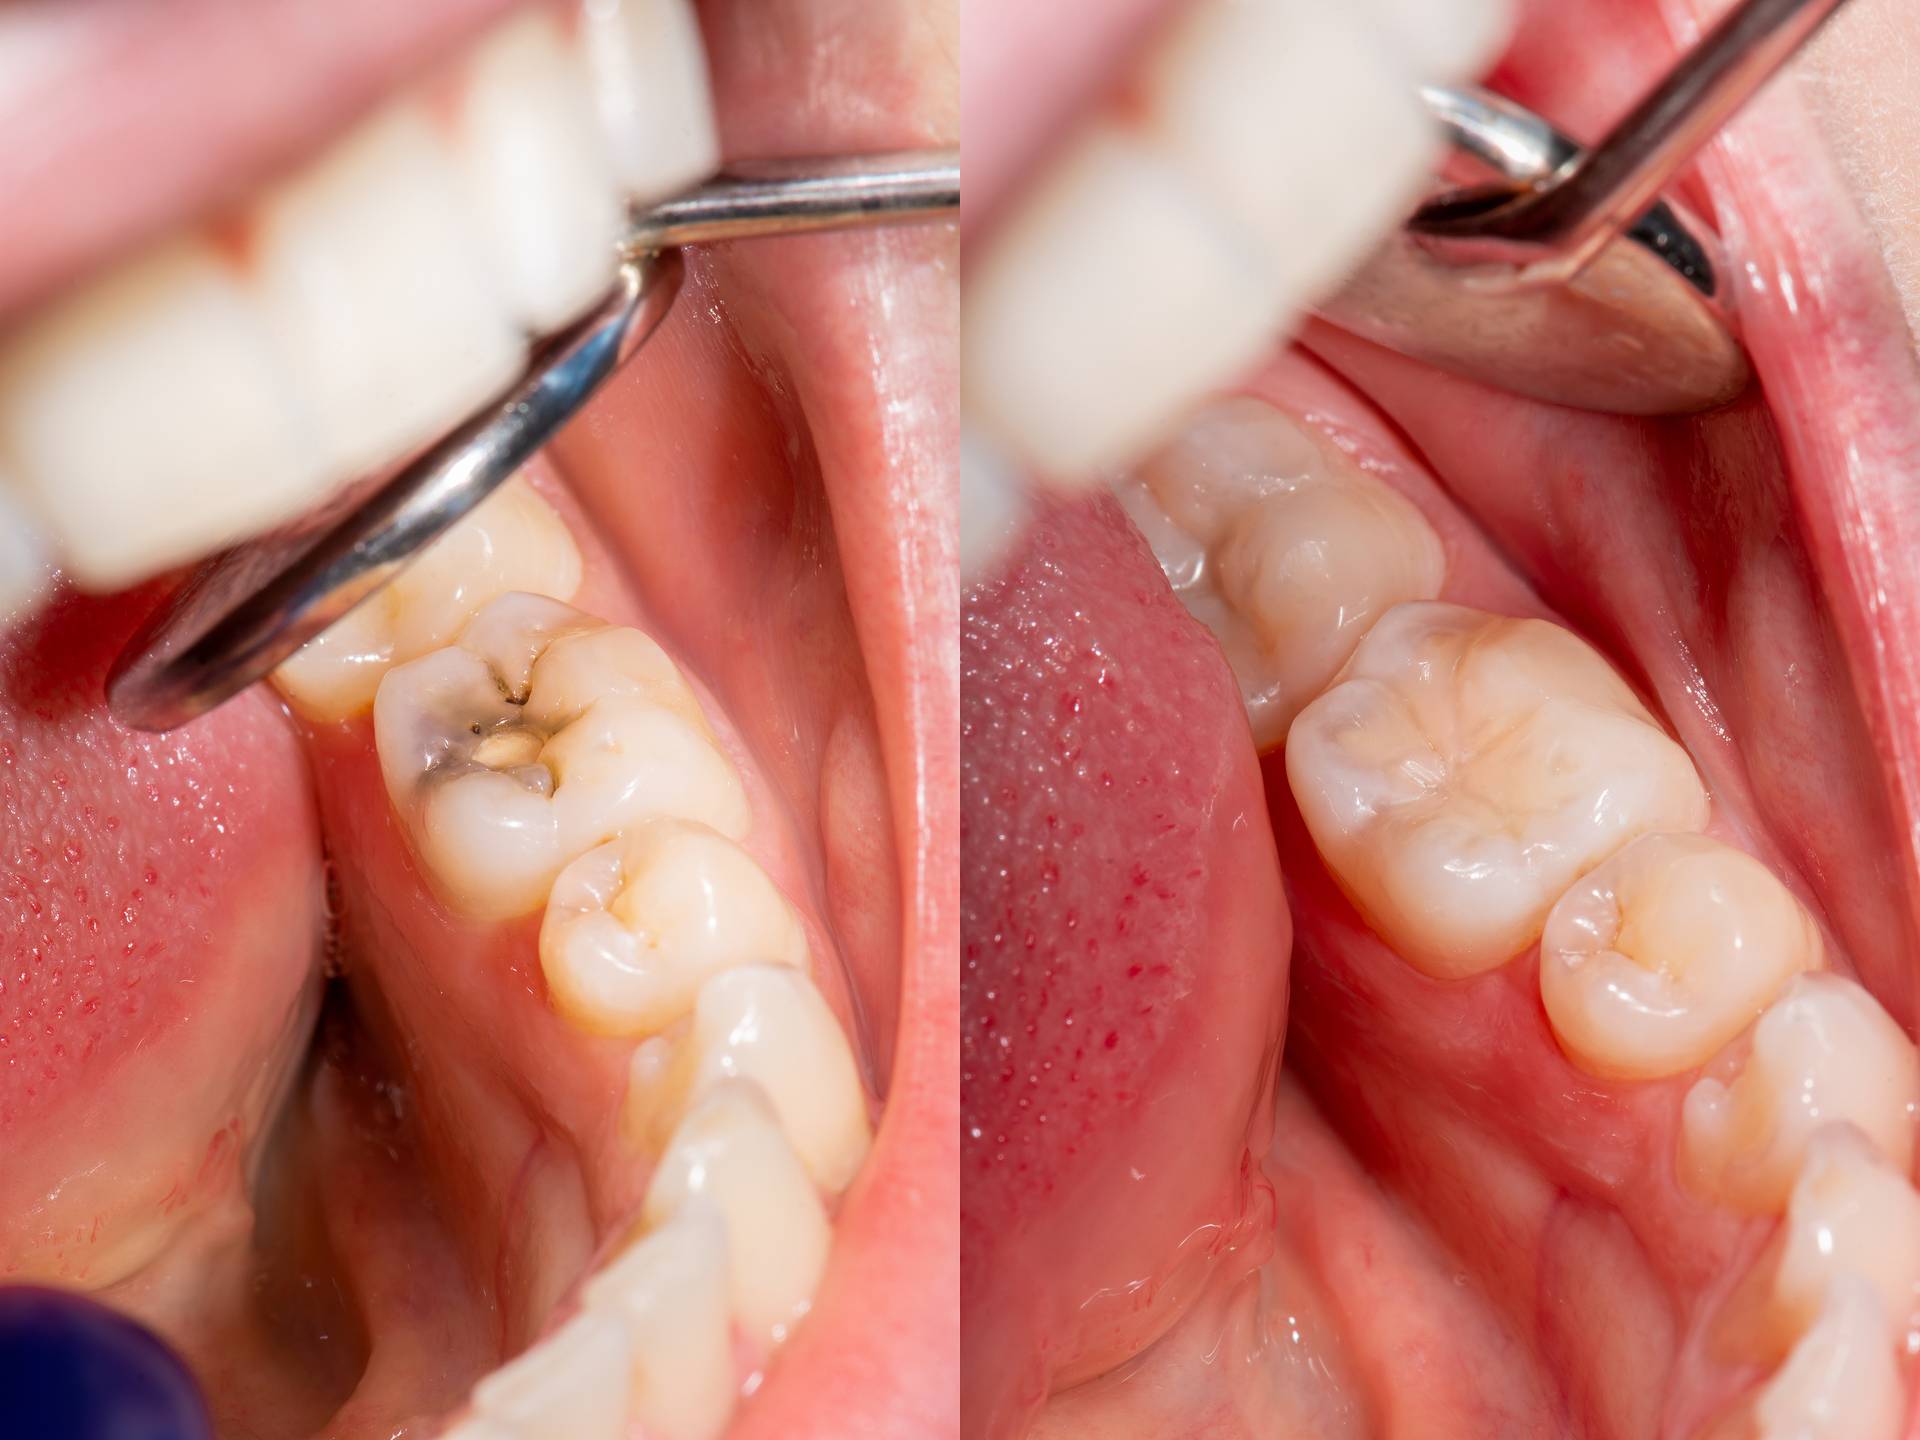 Ein Bild zeigt eine Karies am Zahn. Das zweite Bild zeigt den gefüllten Zahn